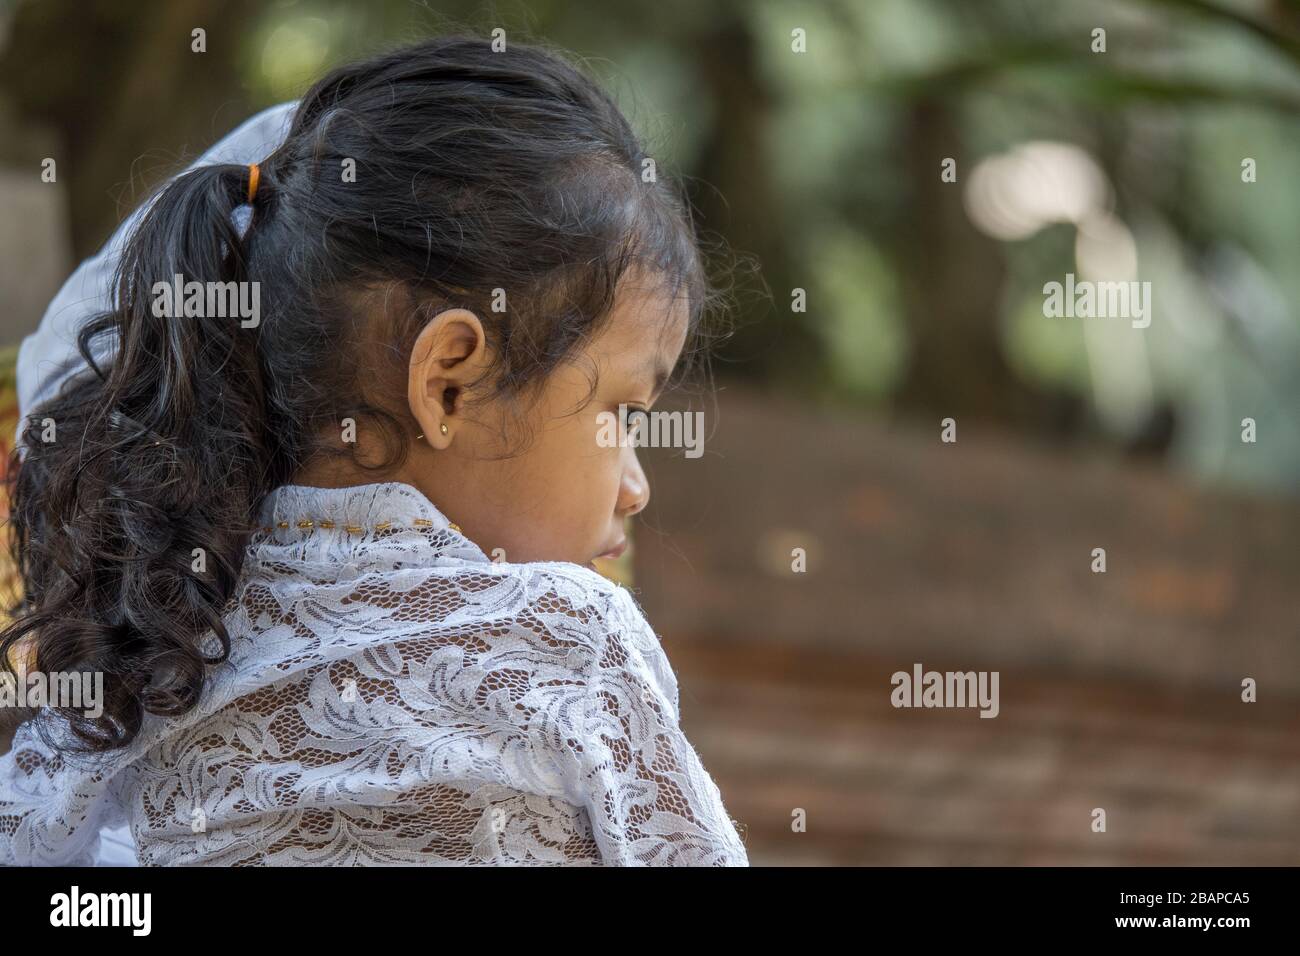 Retrato de una niña balinesa con encaje blanco en la parte superior, pelo negro tirado hacia atrás sentado en el hombro del padre mirando atentamente al espacio. Foto de stock